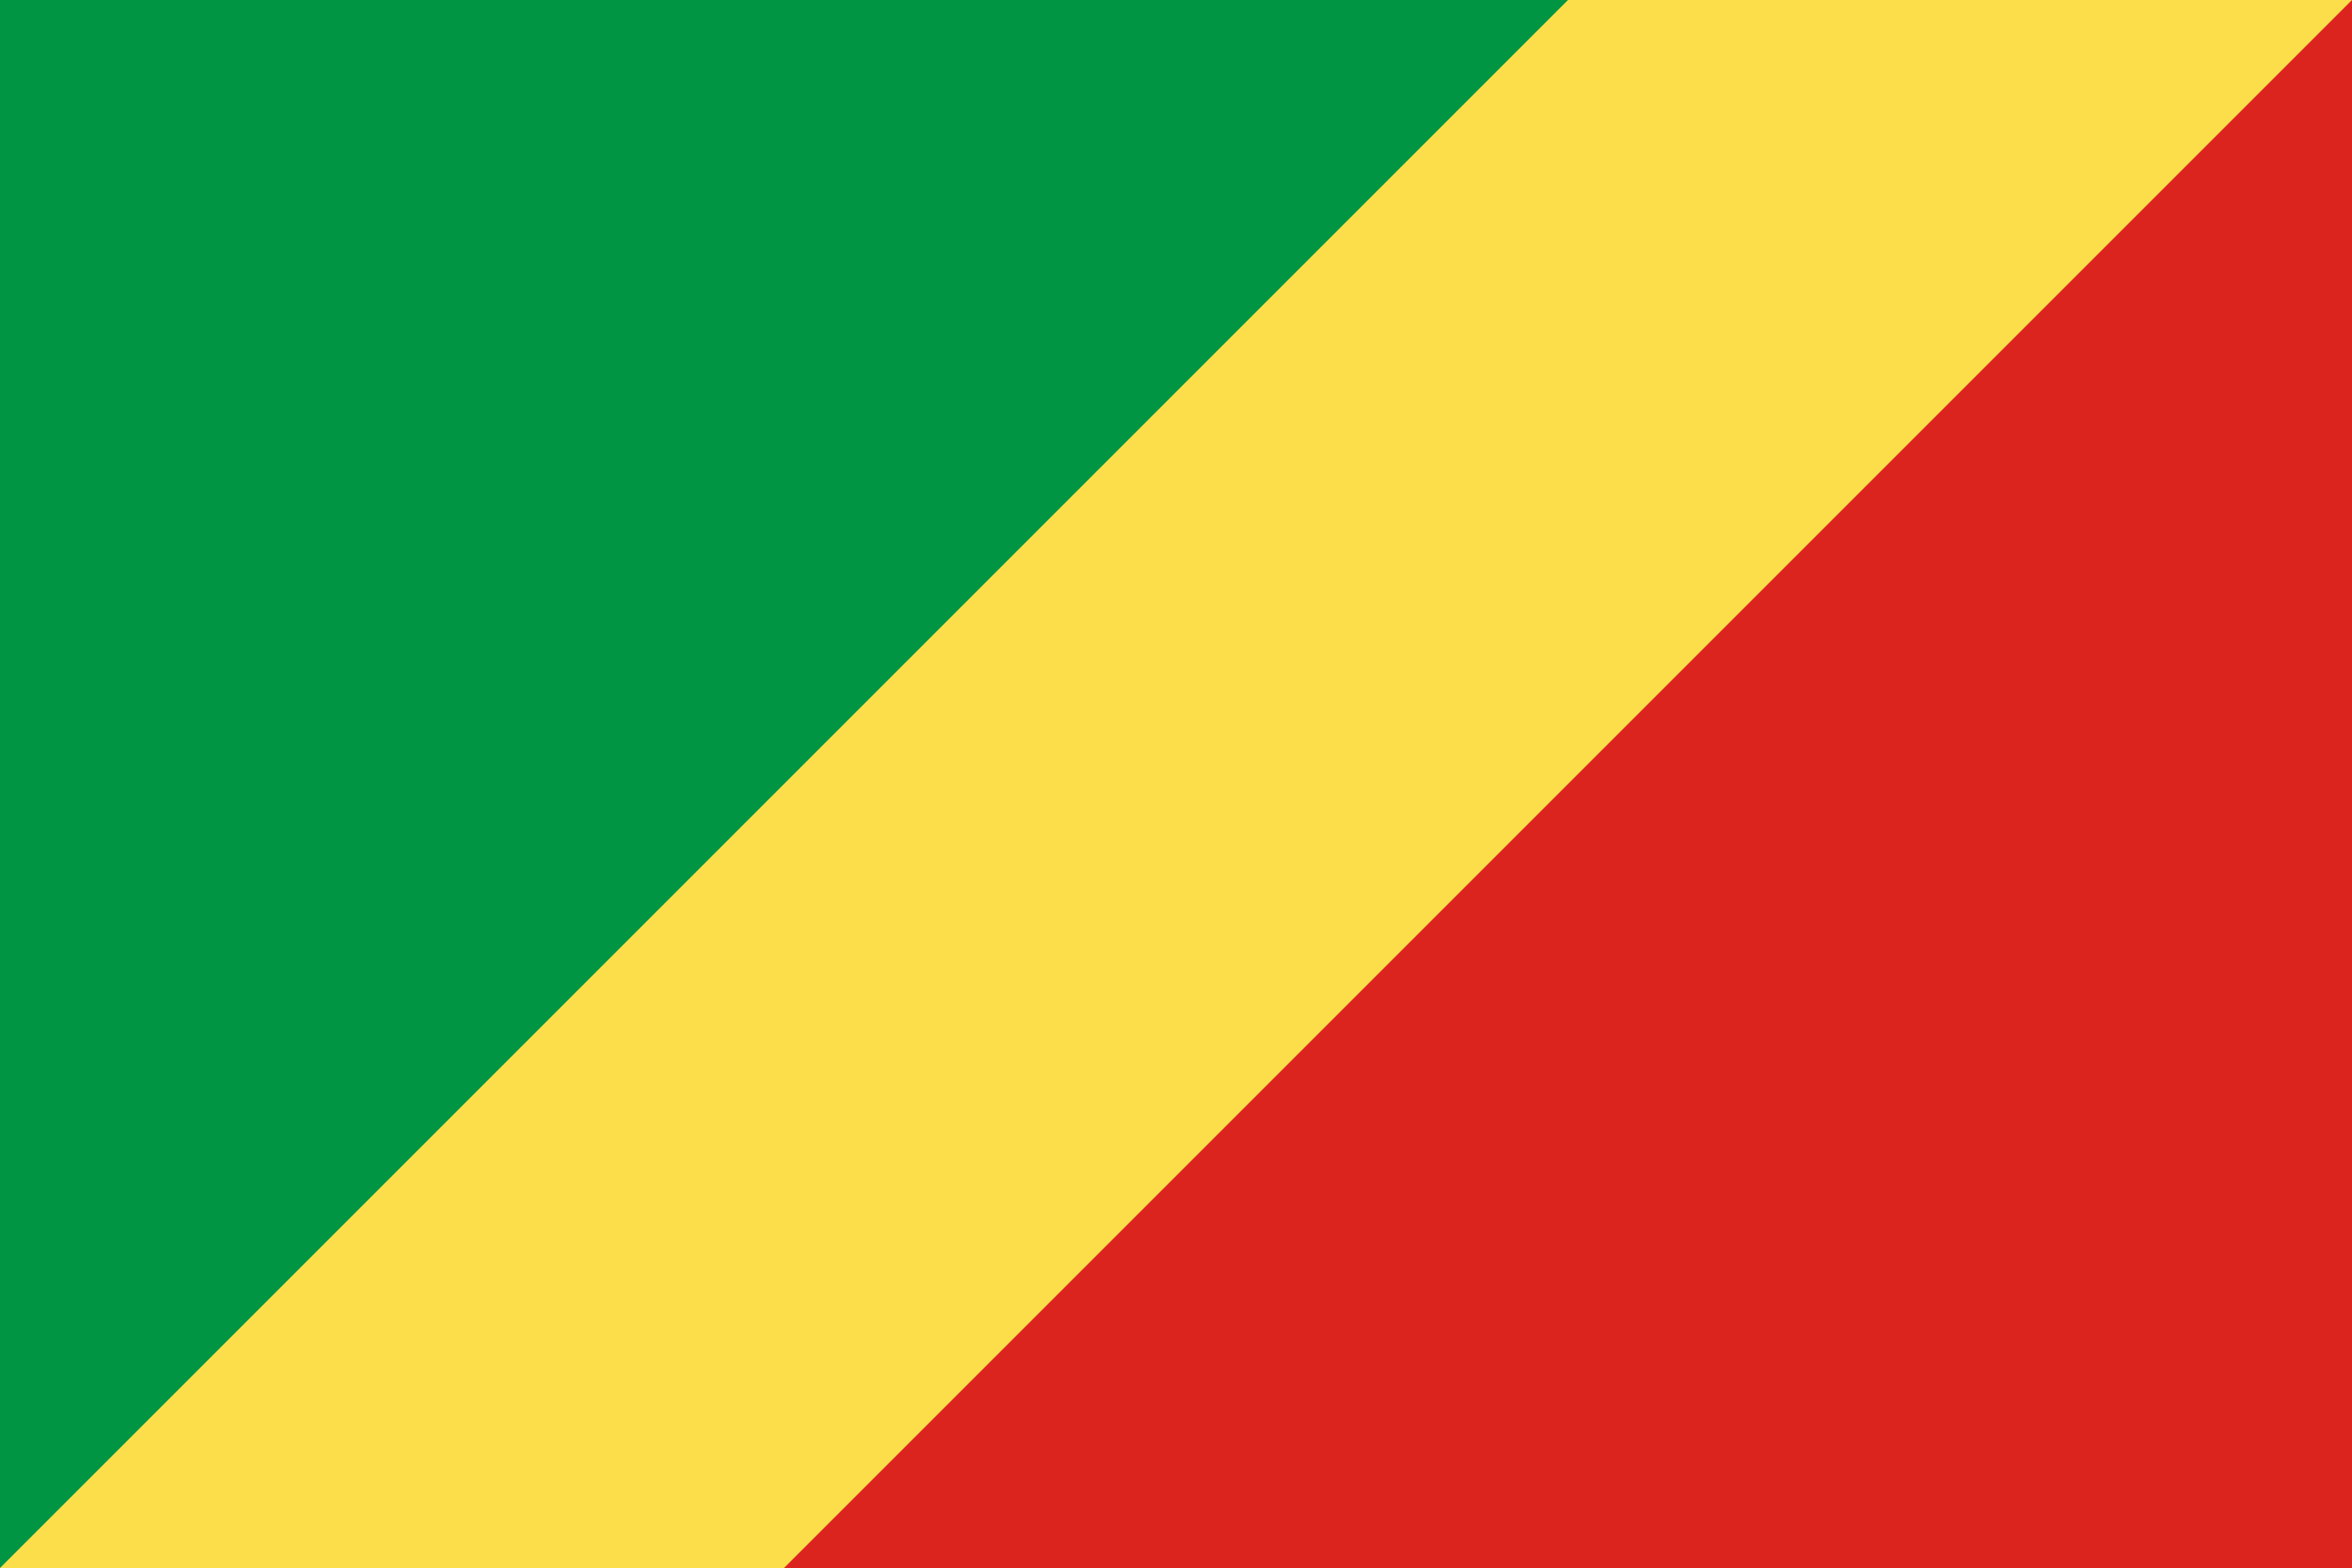 Congo's flag